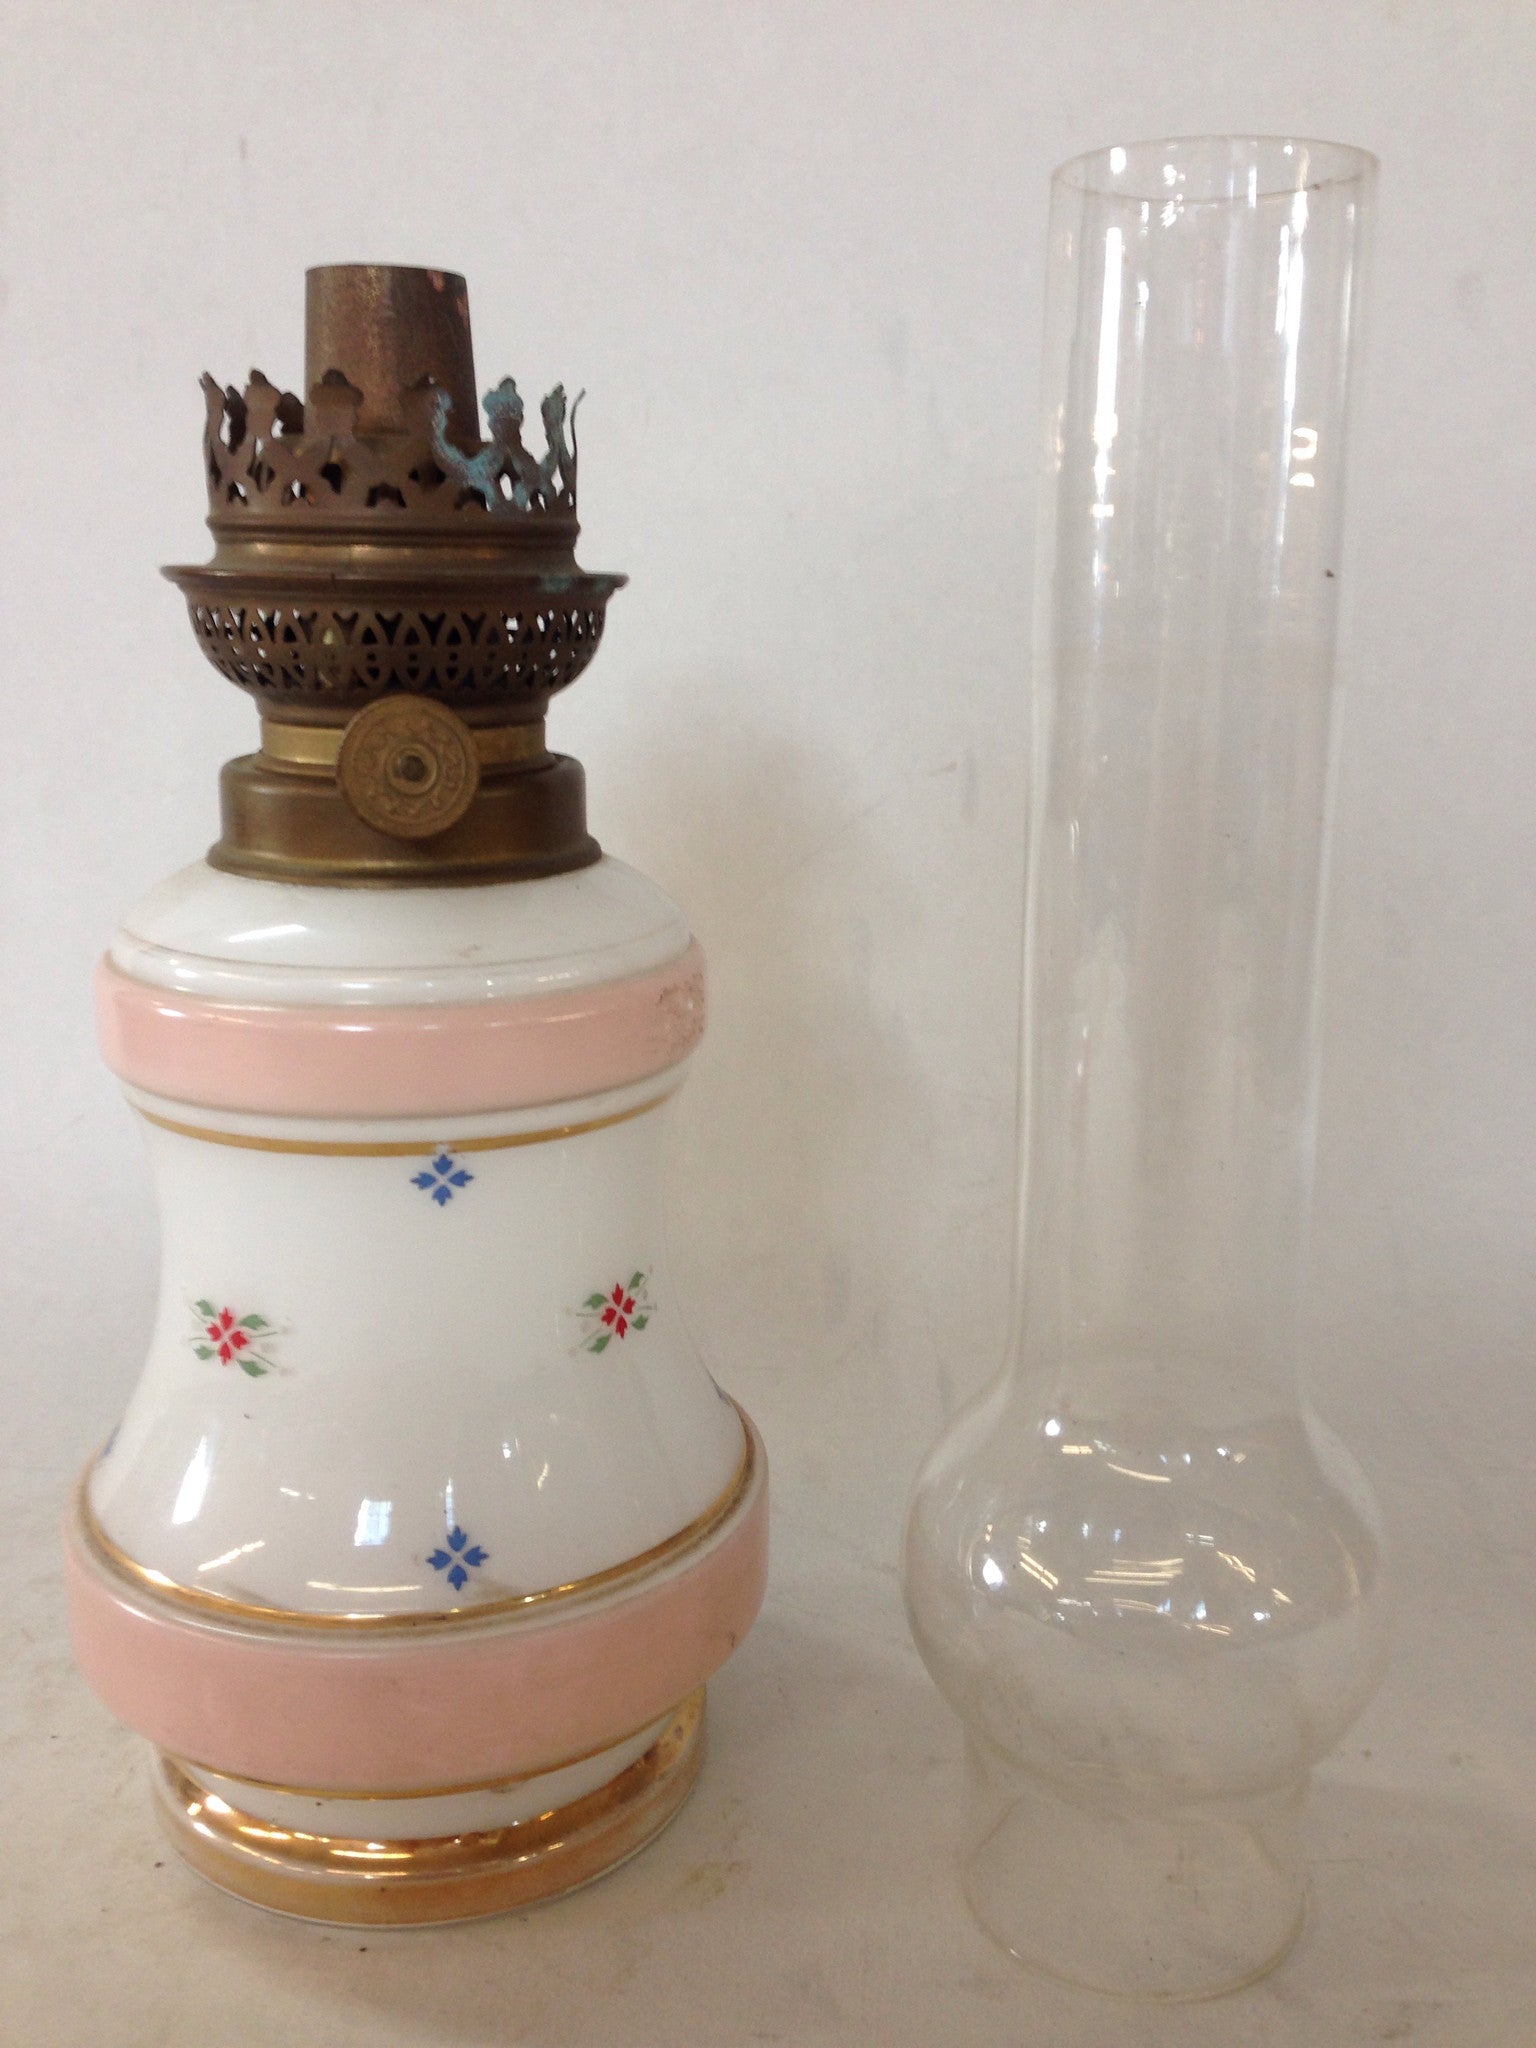 1900's Opaline Glass Oil Lamp